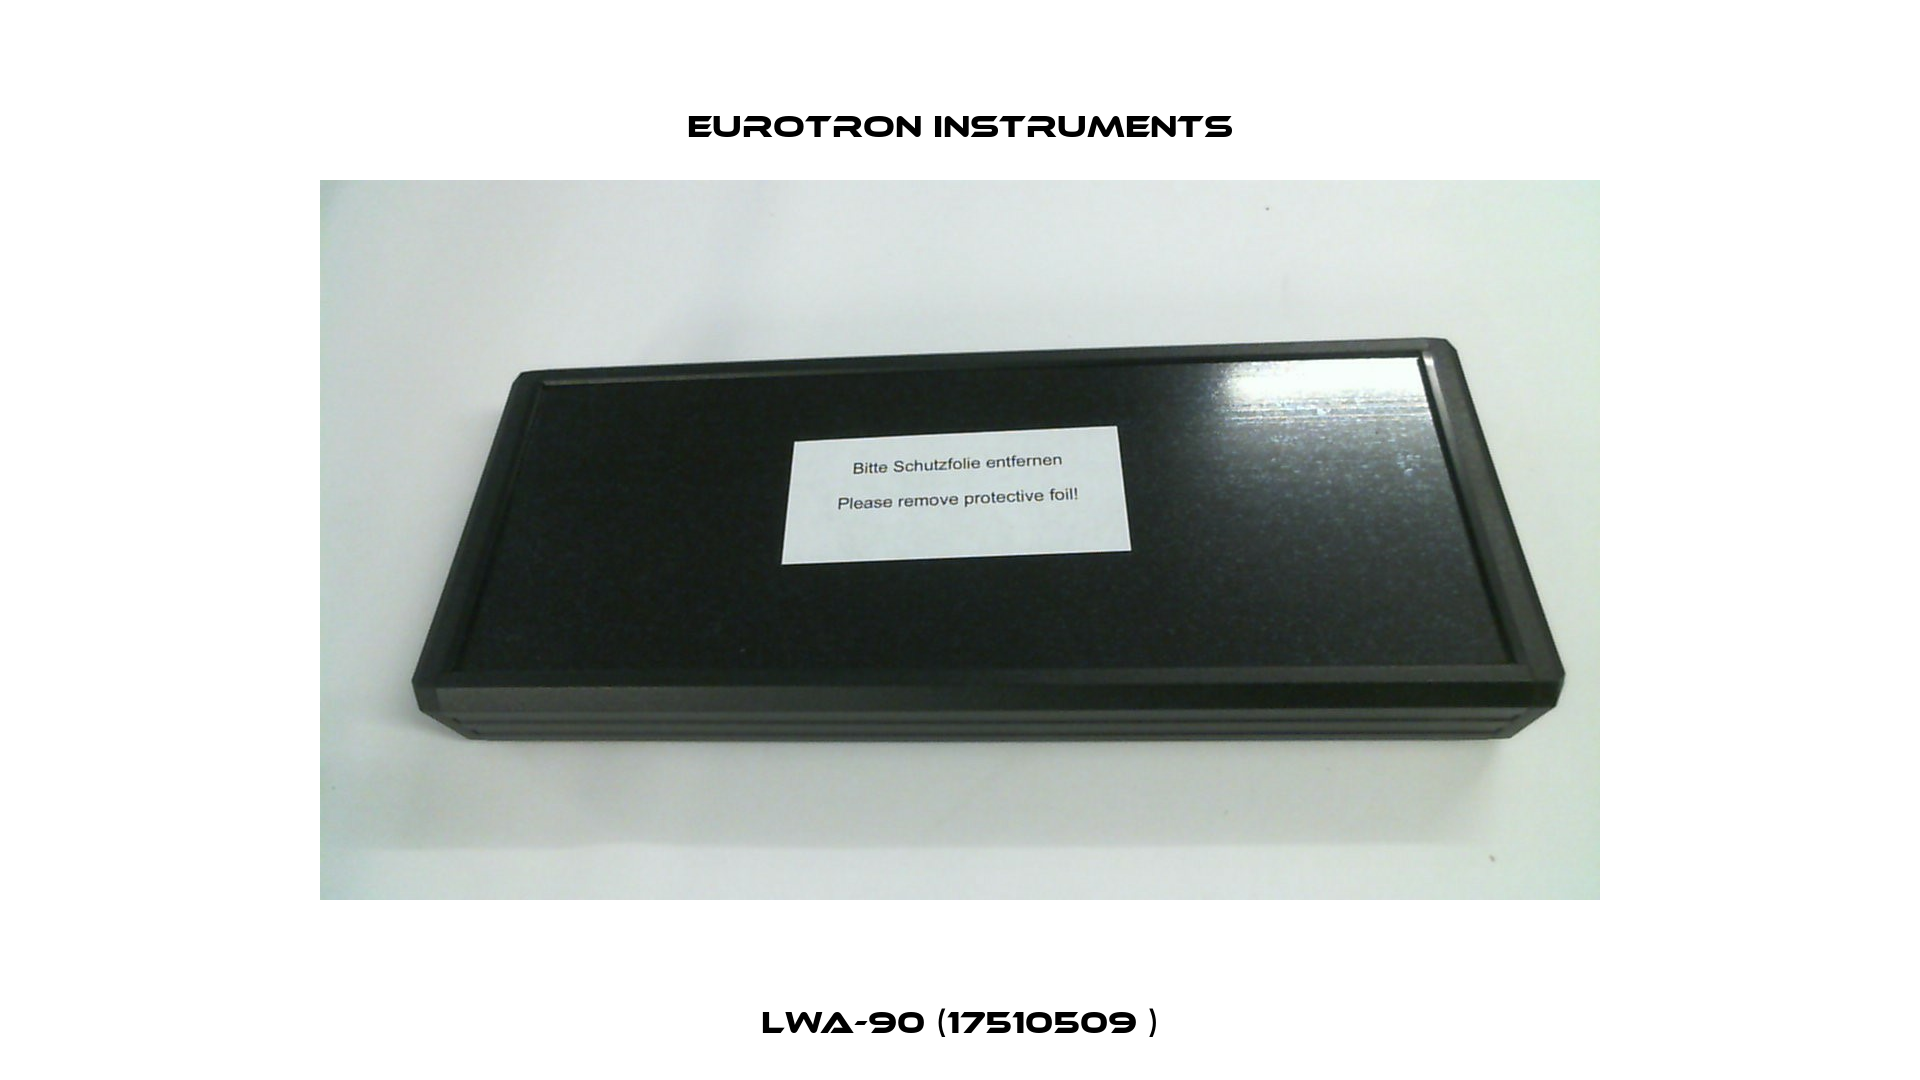 LWA-90 (17510509 ) Eurotron Instruments